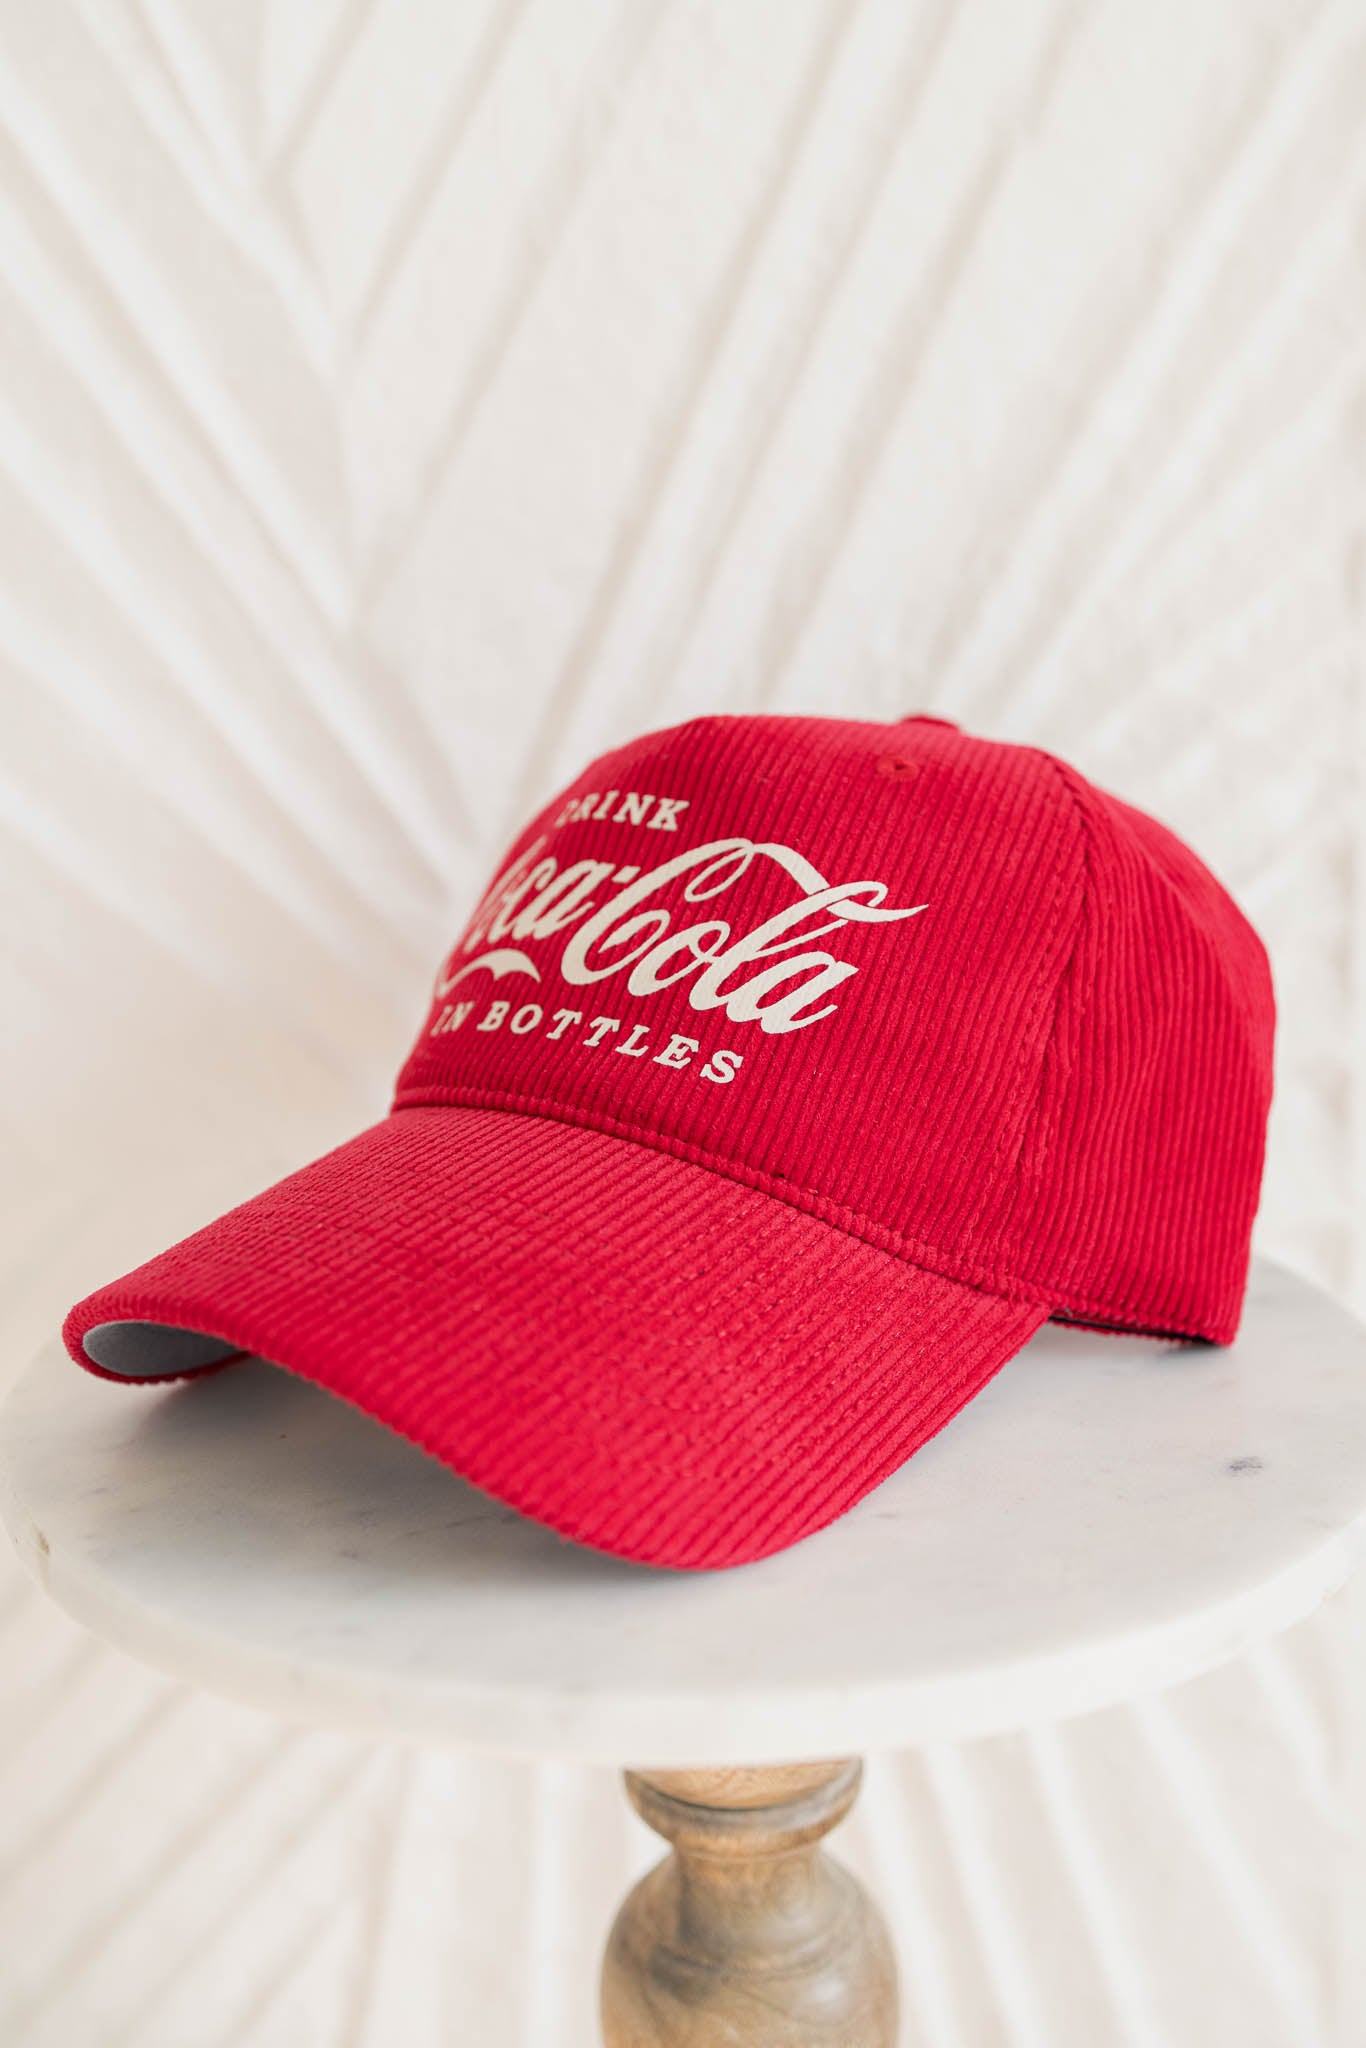 Coca-Cola Trucker Hat